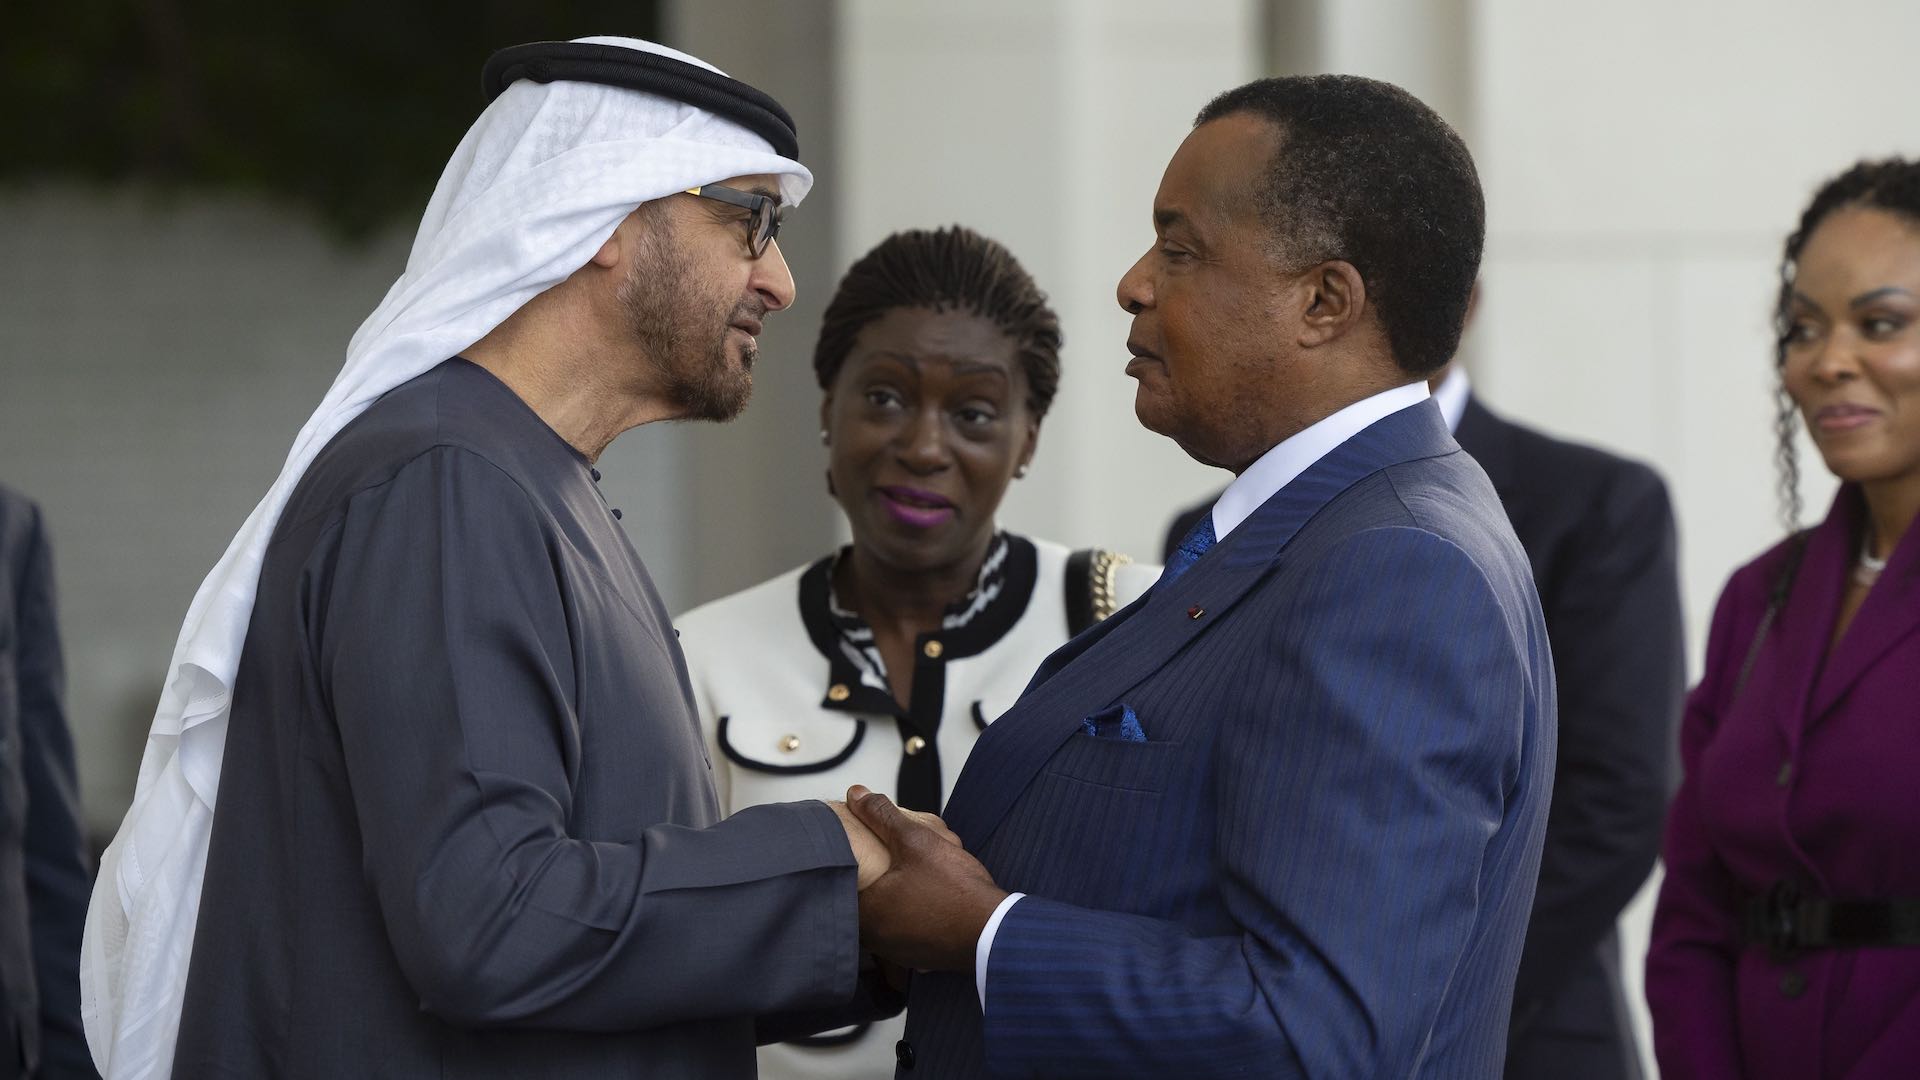 Le président des Émirats arabes unis reçoit le président du Congo-Brazzaville